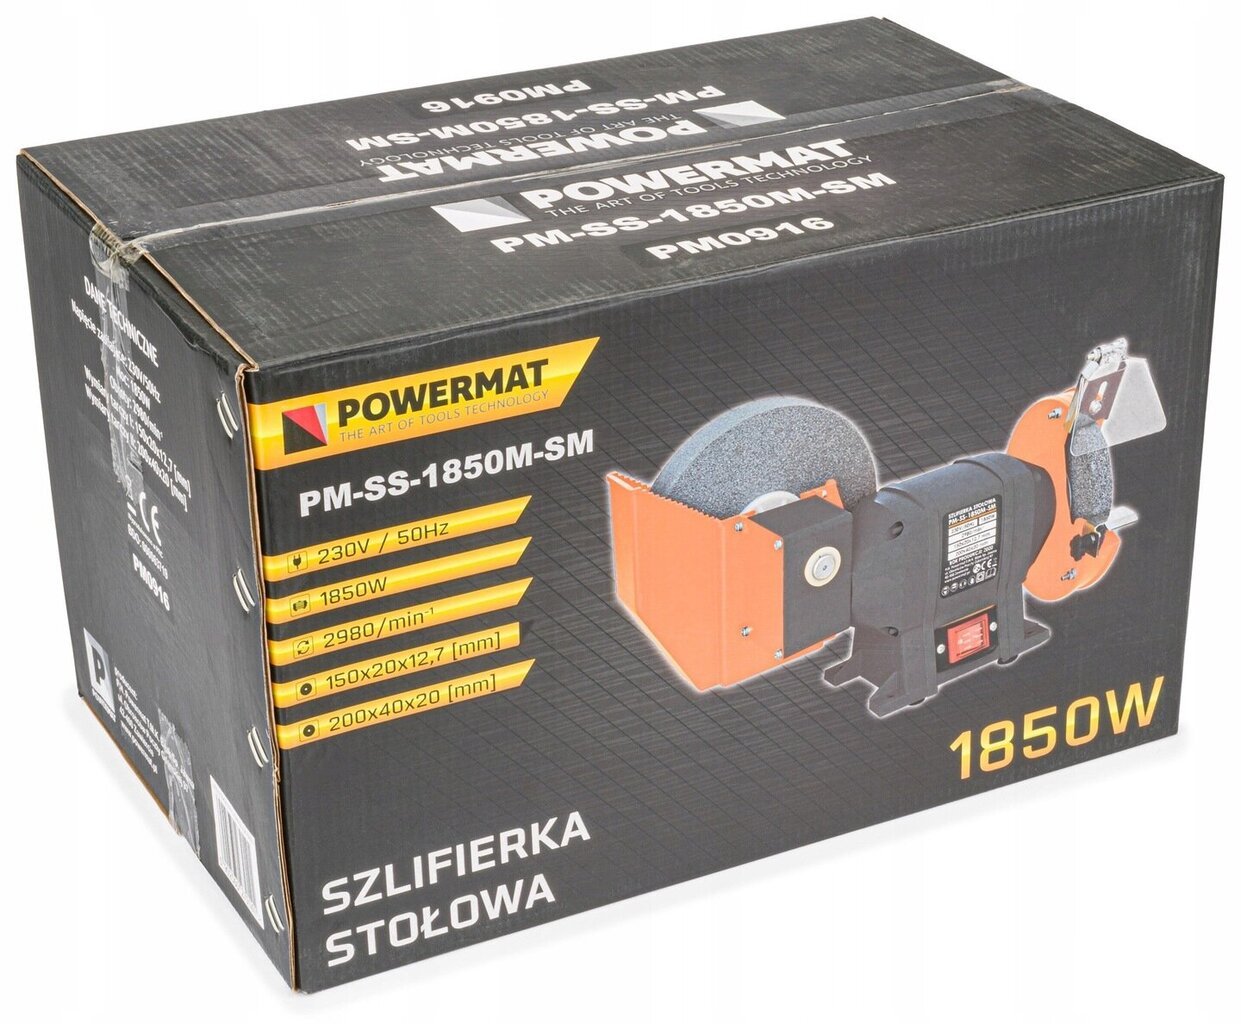 Elektrinis galąstuvas Powermat PM-SS-1850M-SM / PM0916, 1850W kaina ir informacija | Šlifuokliai | pigu.lt